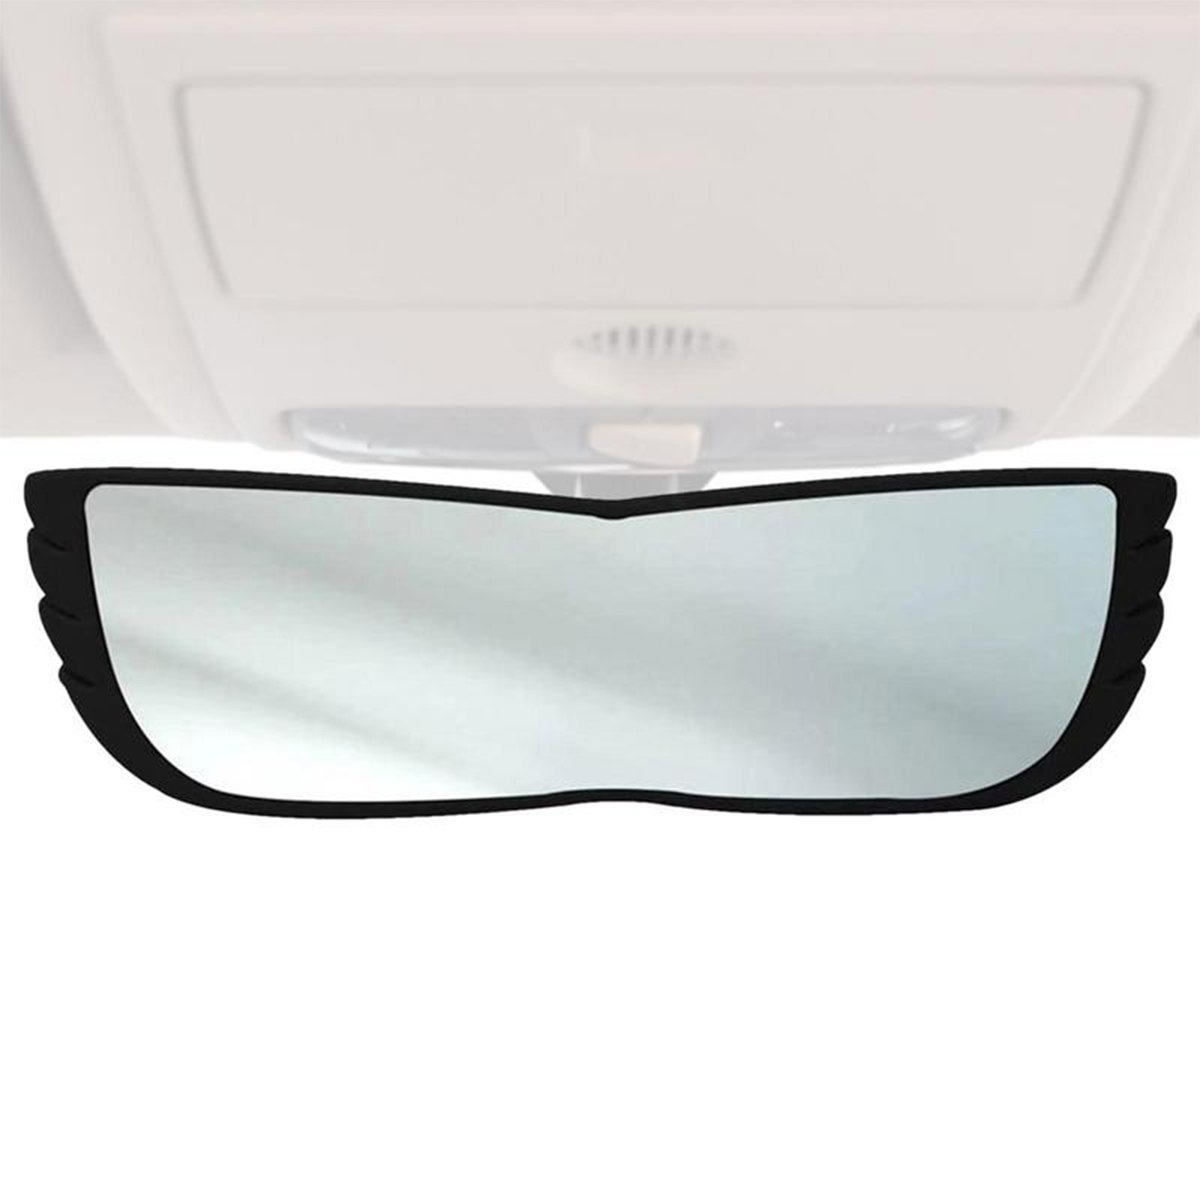 Espelho Retrovisor 160 Graus Carro Automotivo Caminhao Visao Panoramica Ampla Visibilidade Reduz Pon - 9